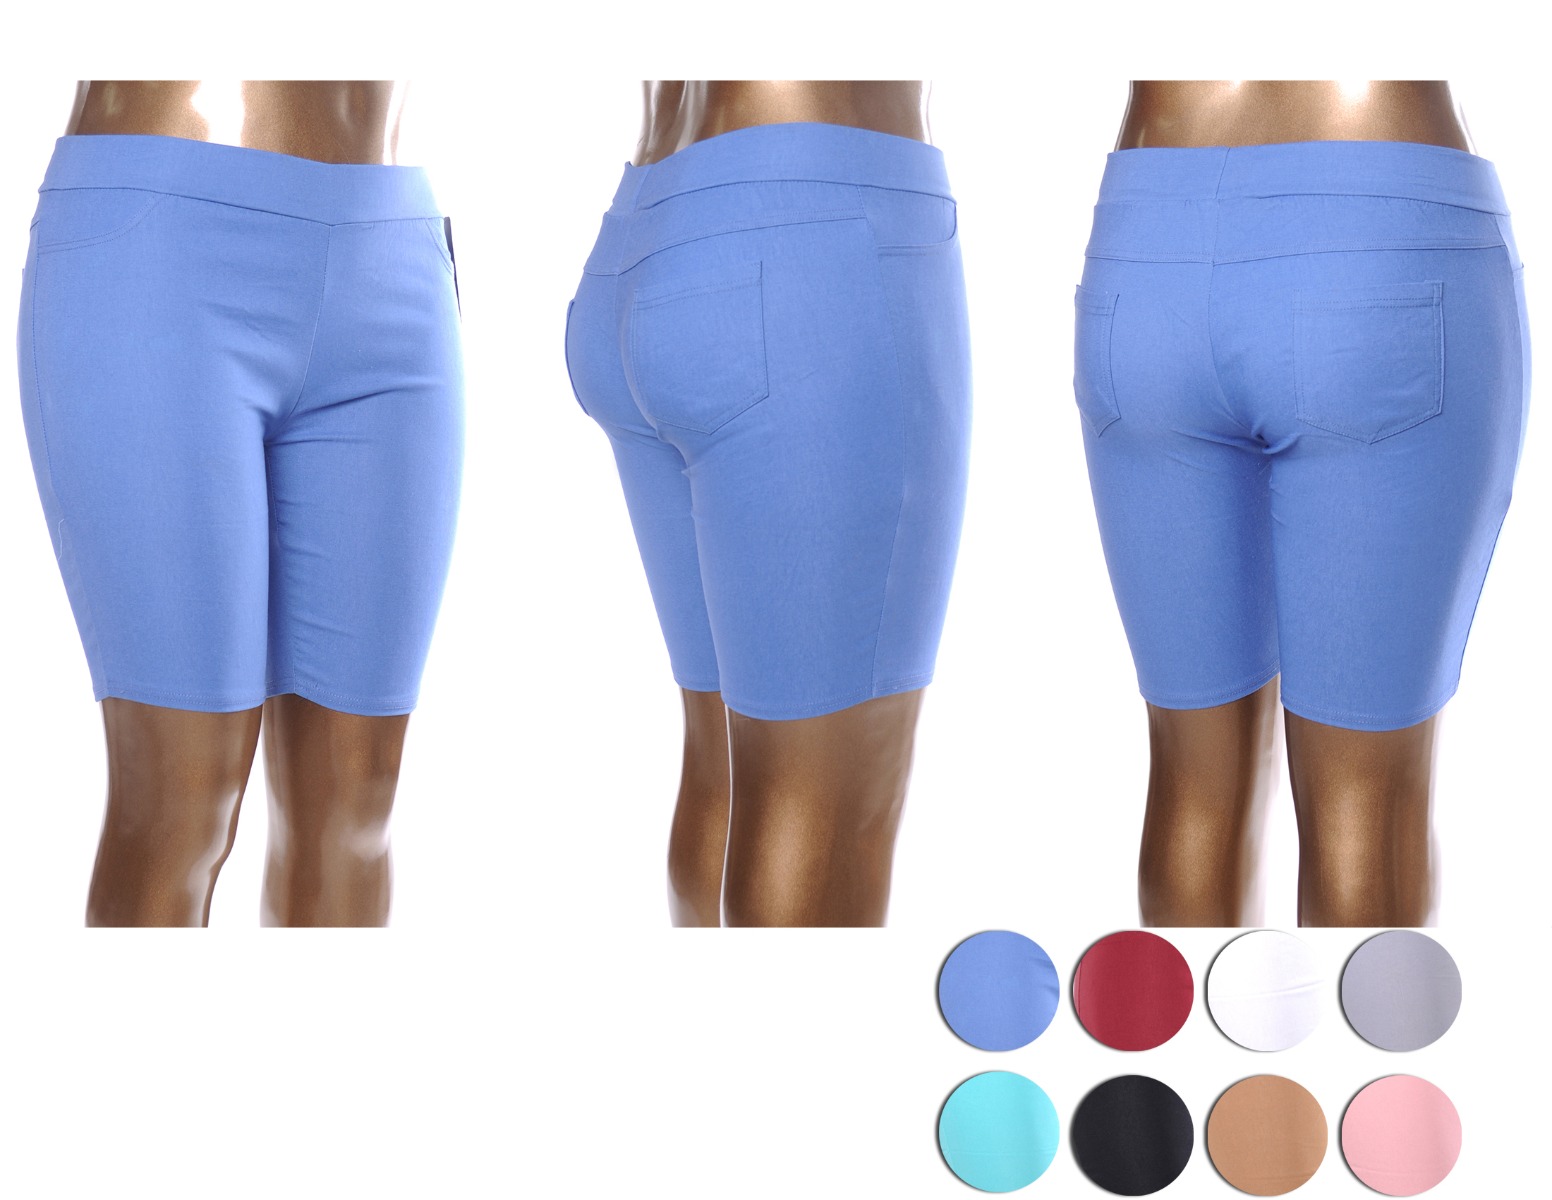 Women's Plus Size Capri PANTS w/ Pockets - Assorted Colors